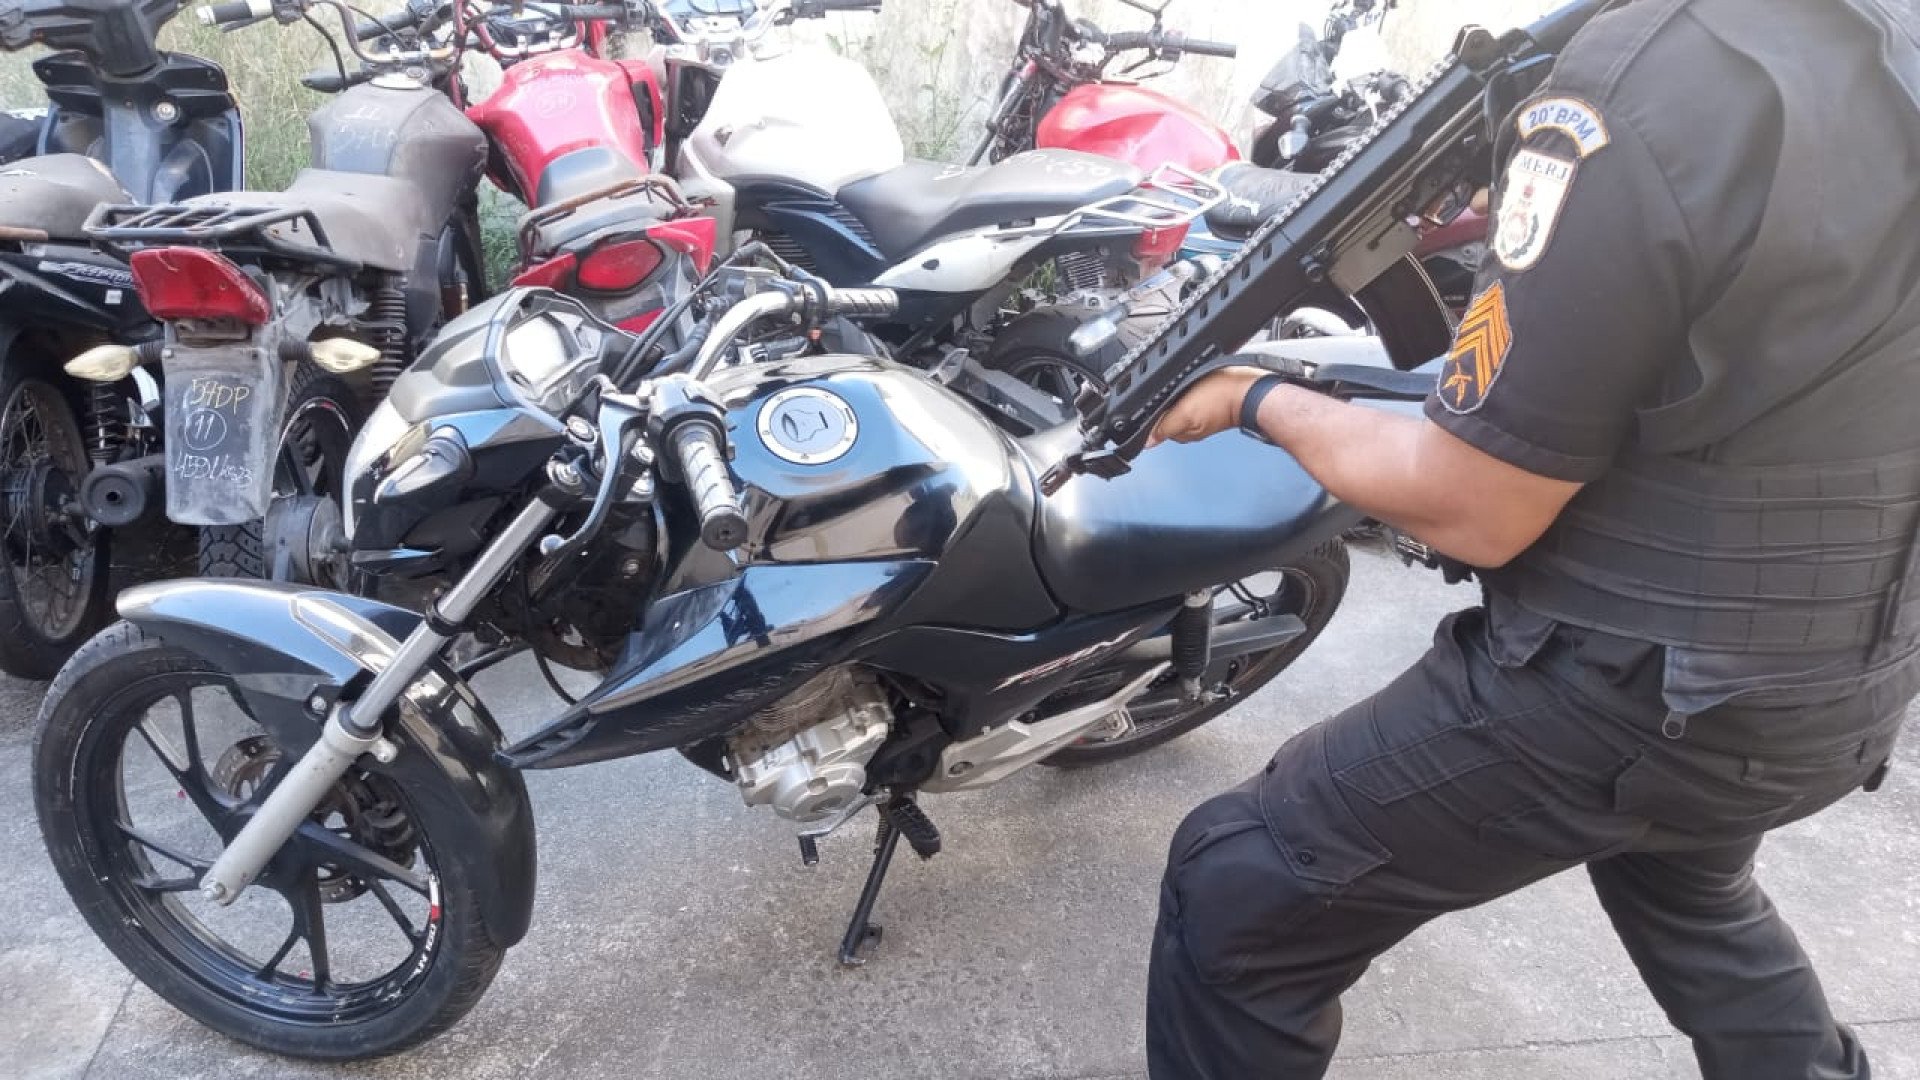 Motocicleta roubada apreendida pelos policiais militares do 20º BPM - Divulgação / 20 º BPM